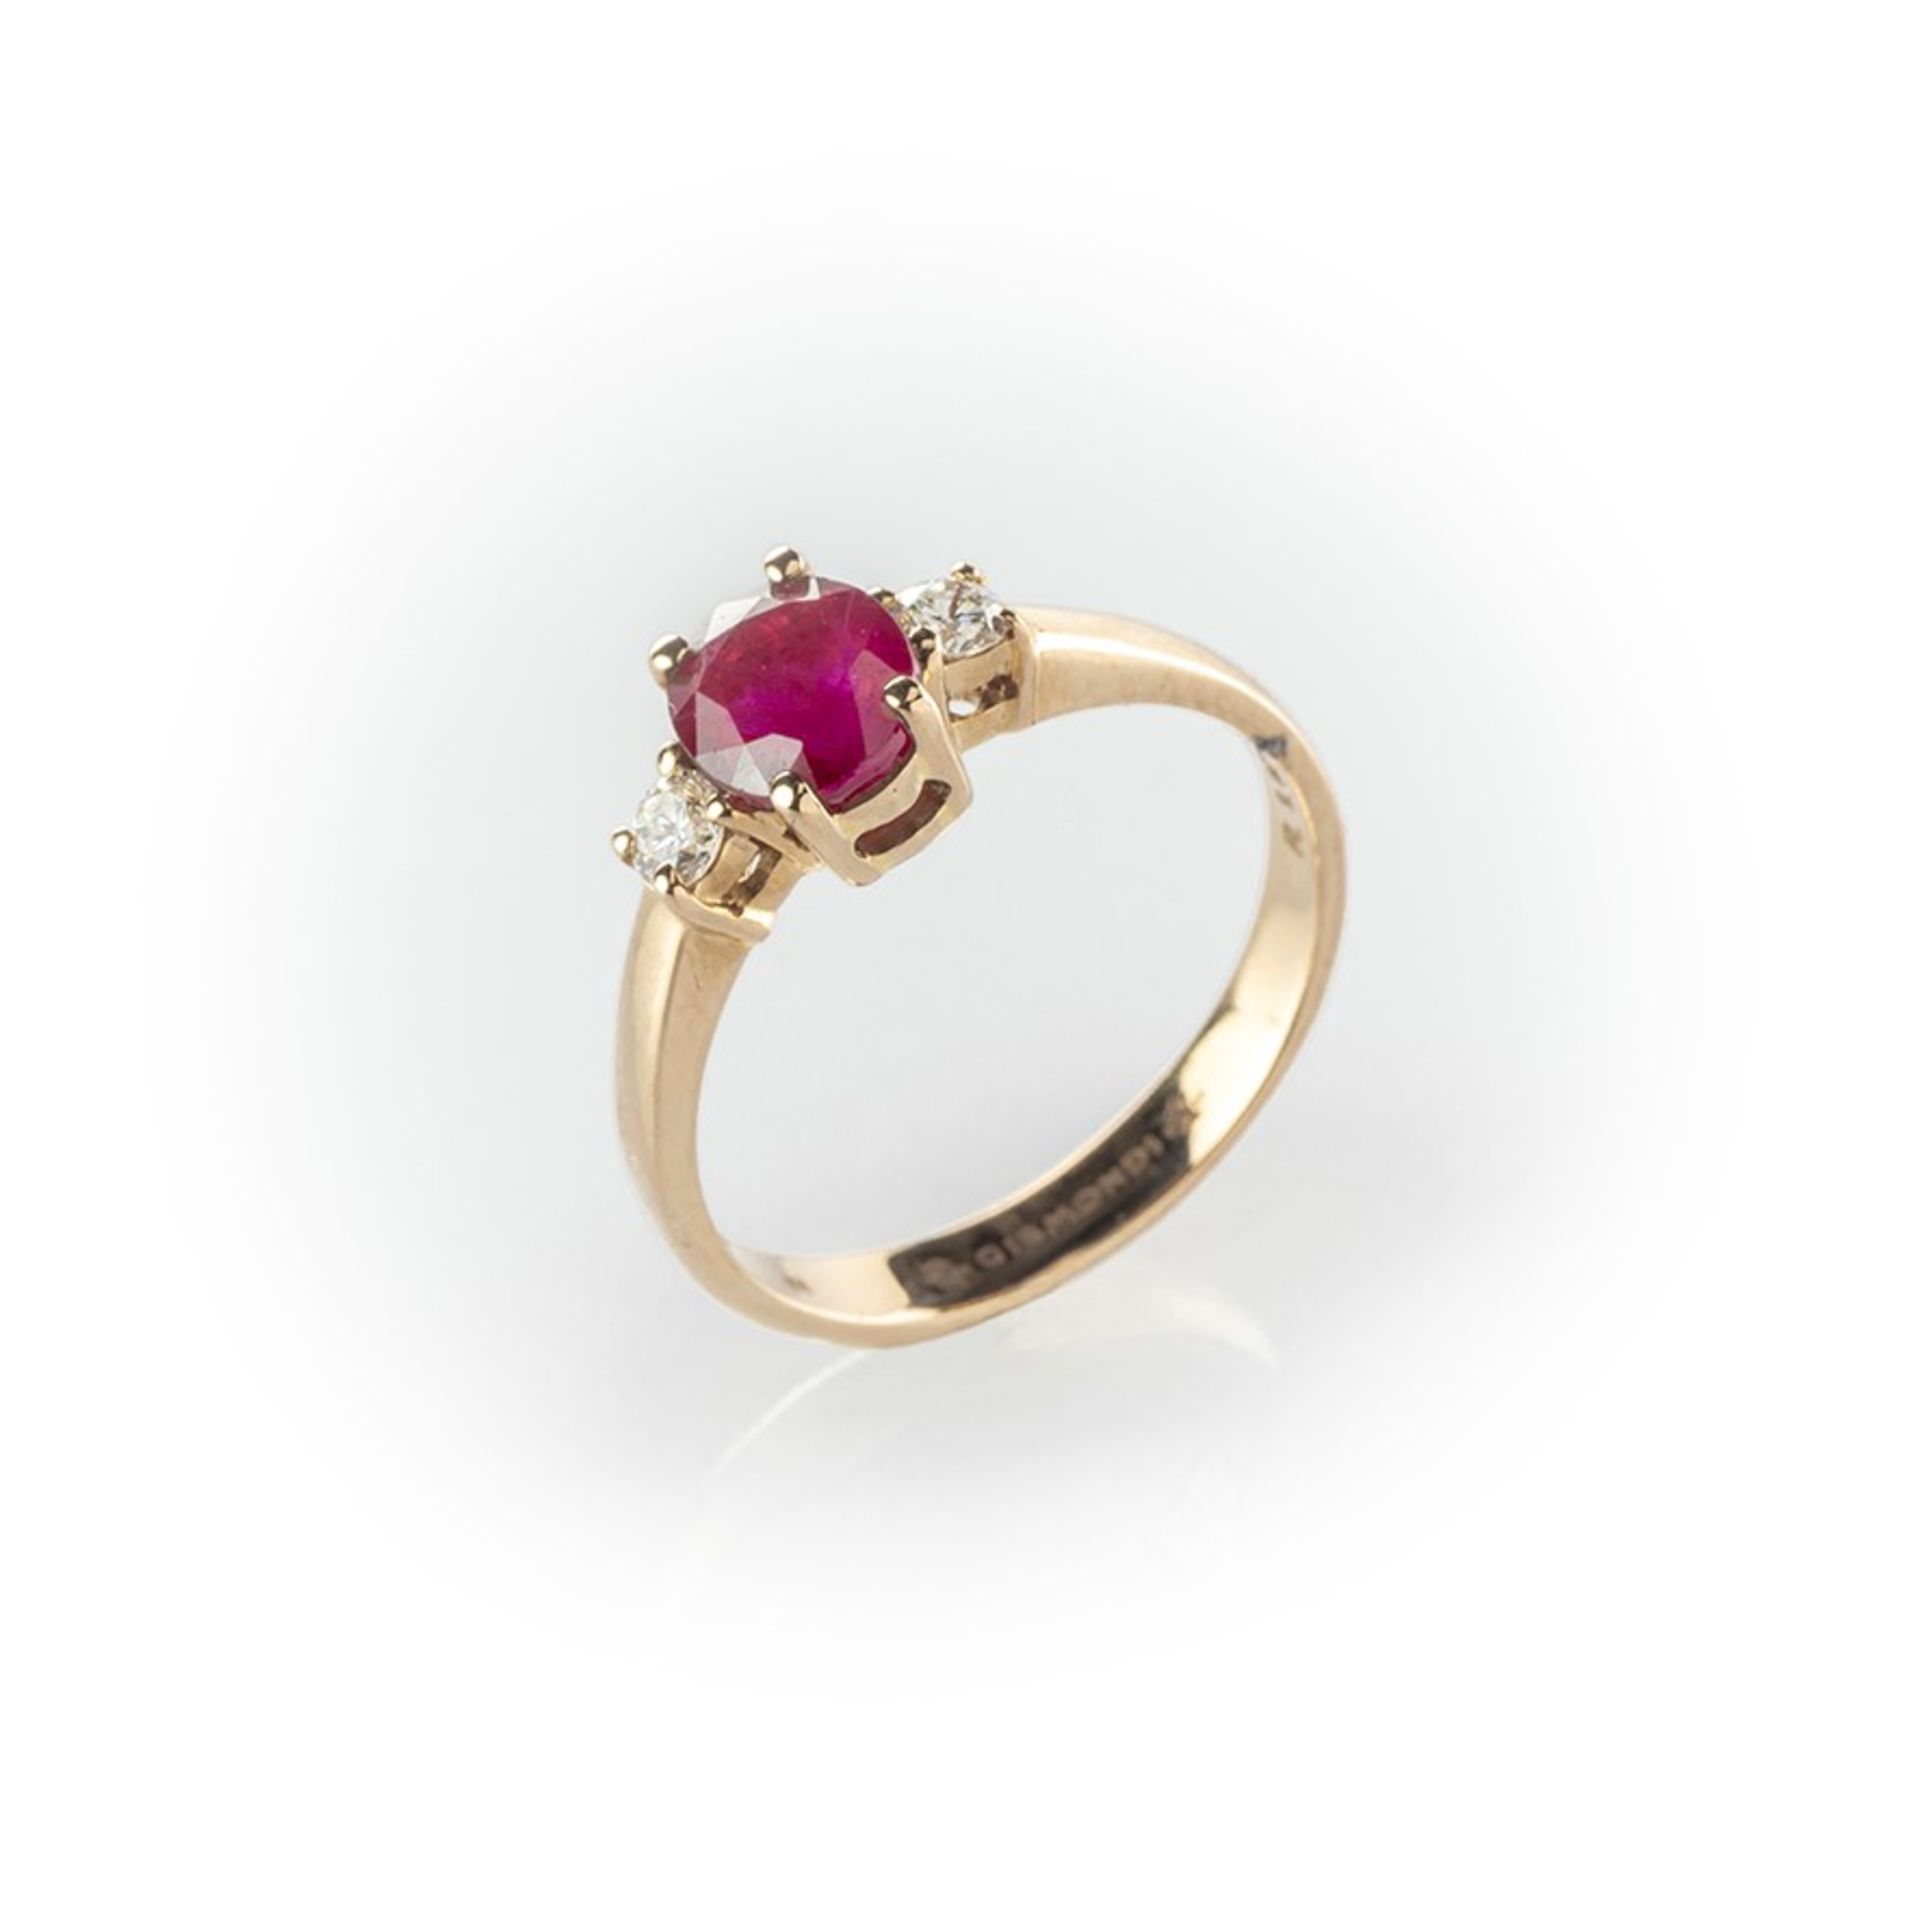 Anello Gismondi in oro rosa con rubino centrale taglio ovale contornato da due diamanti taglio brill